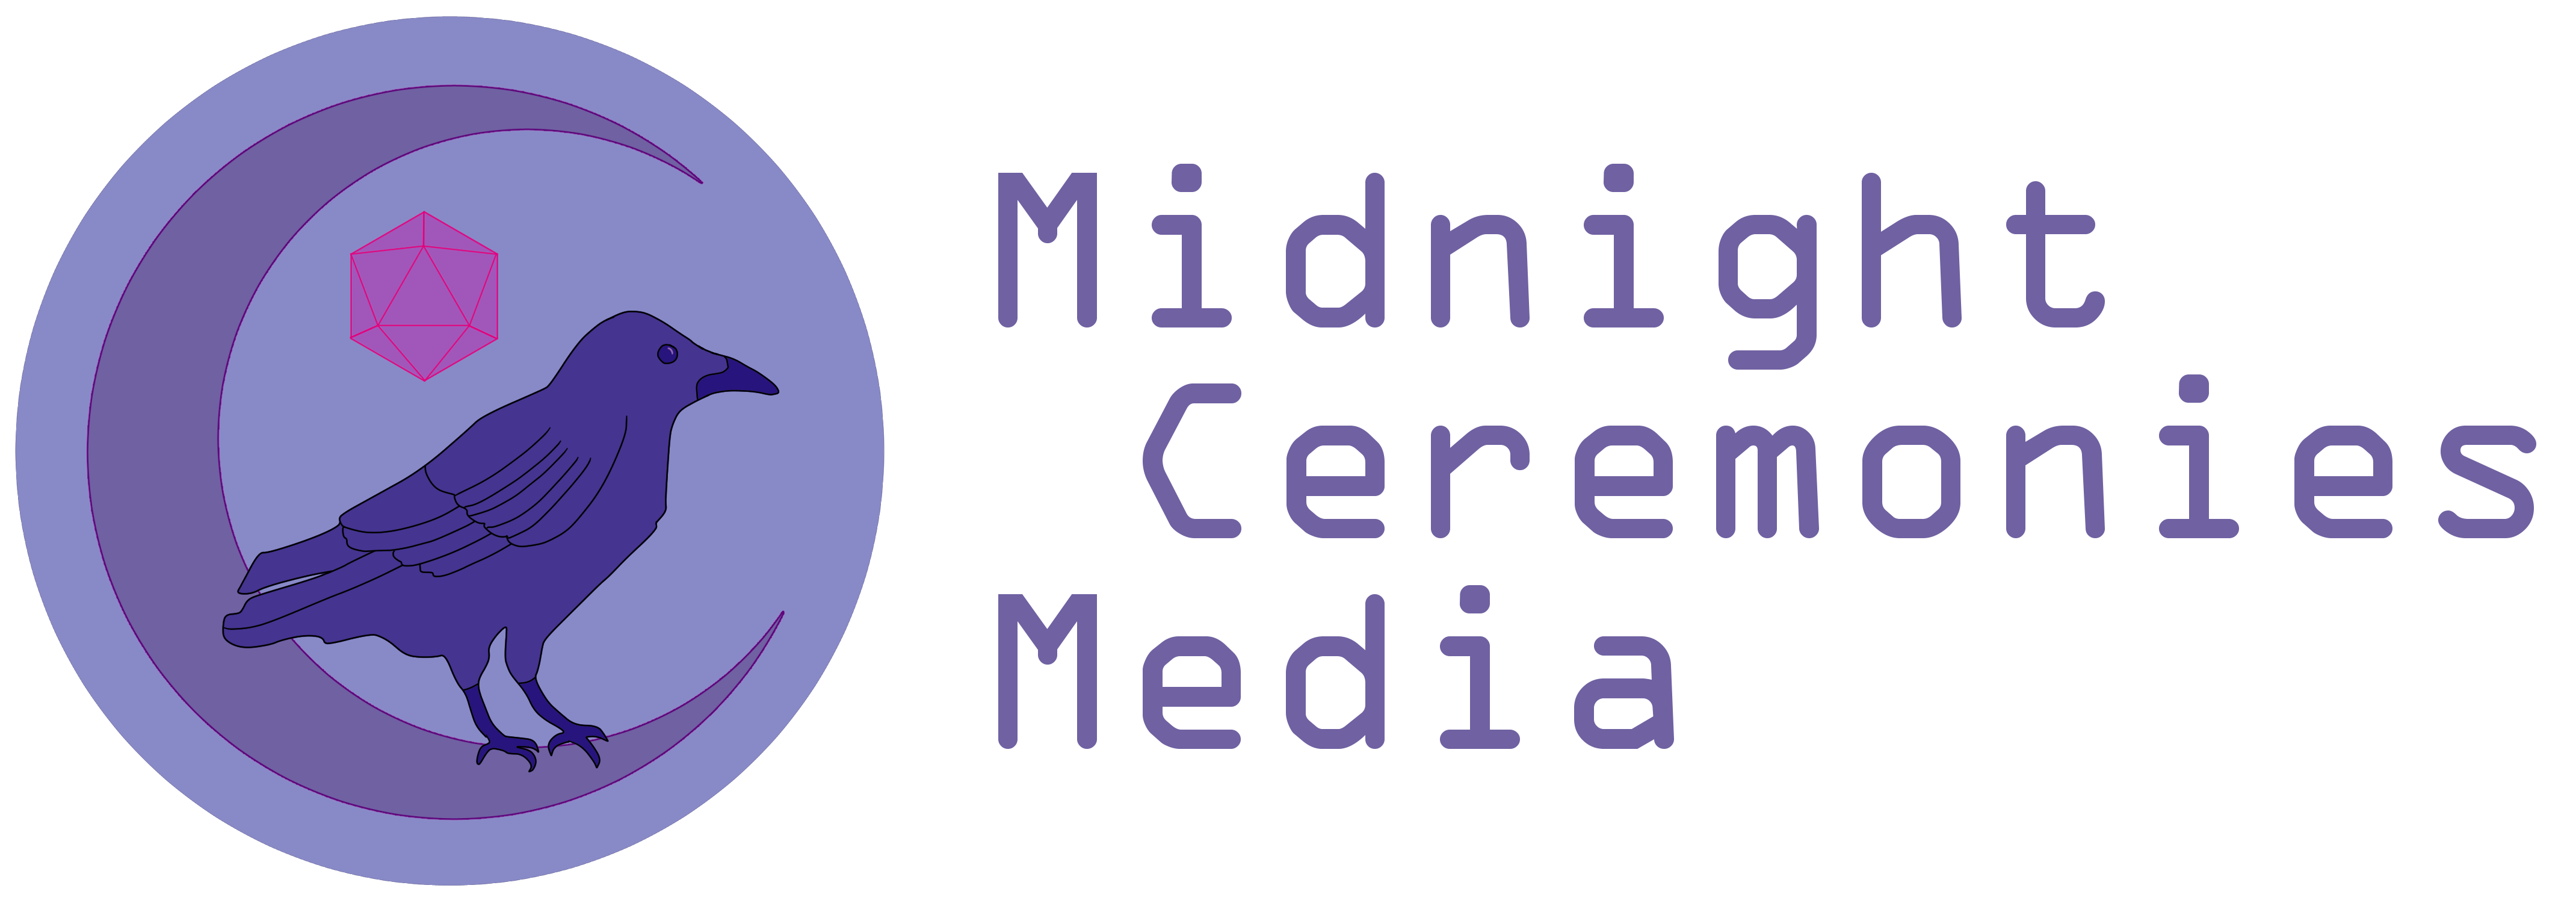 Midnight Ceremonies Media